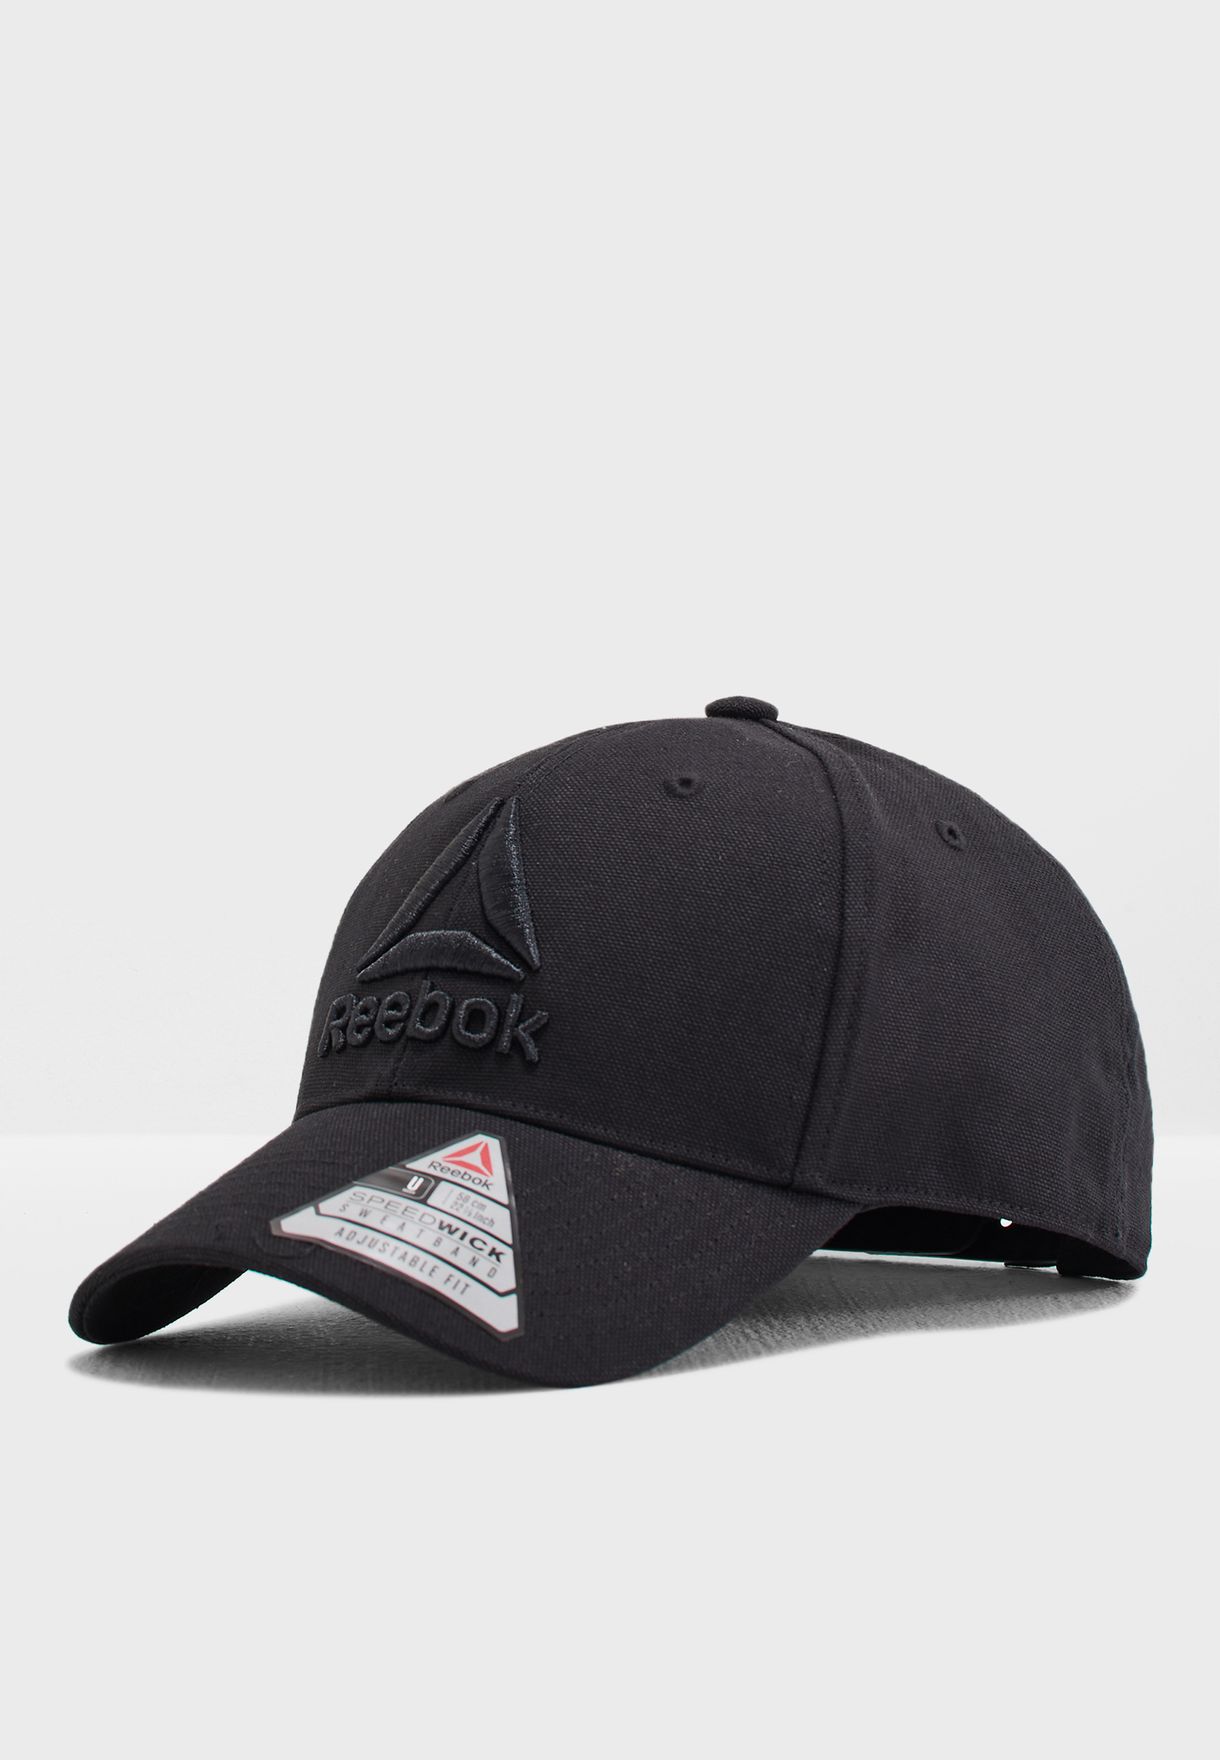 reebok cap black